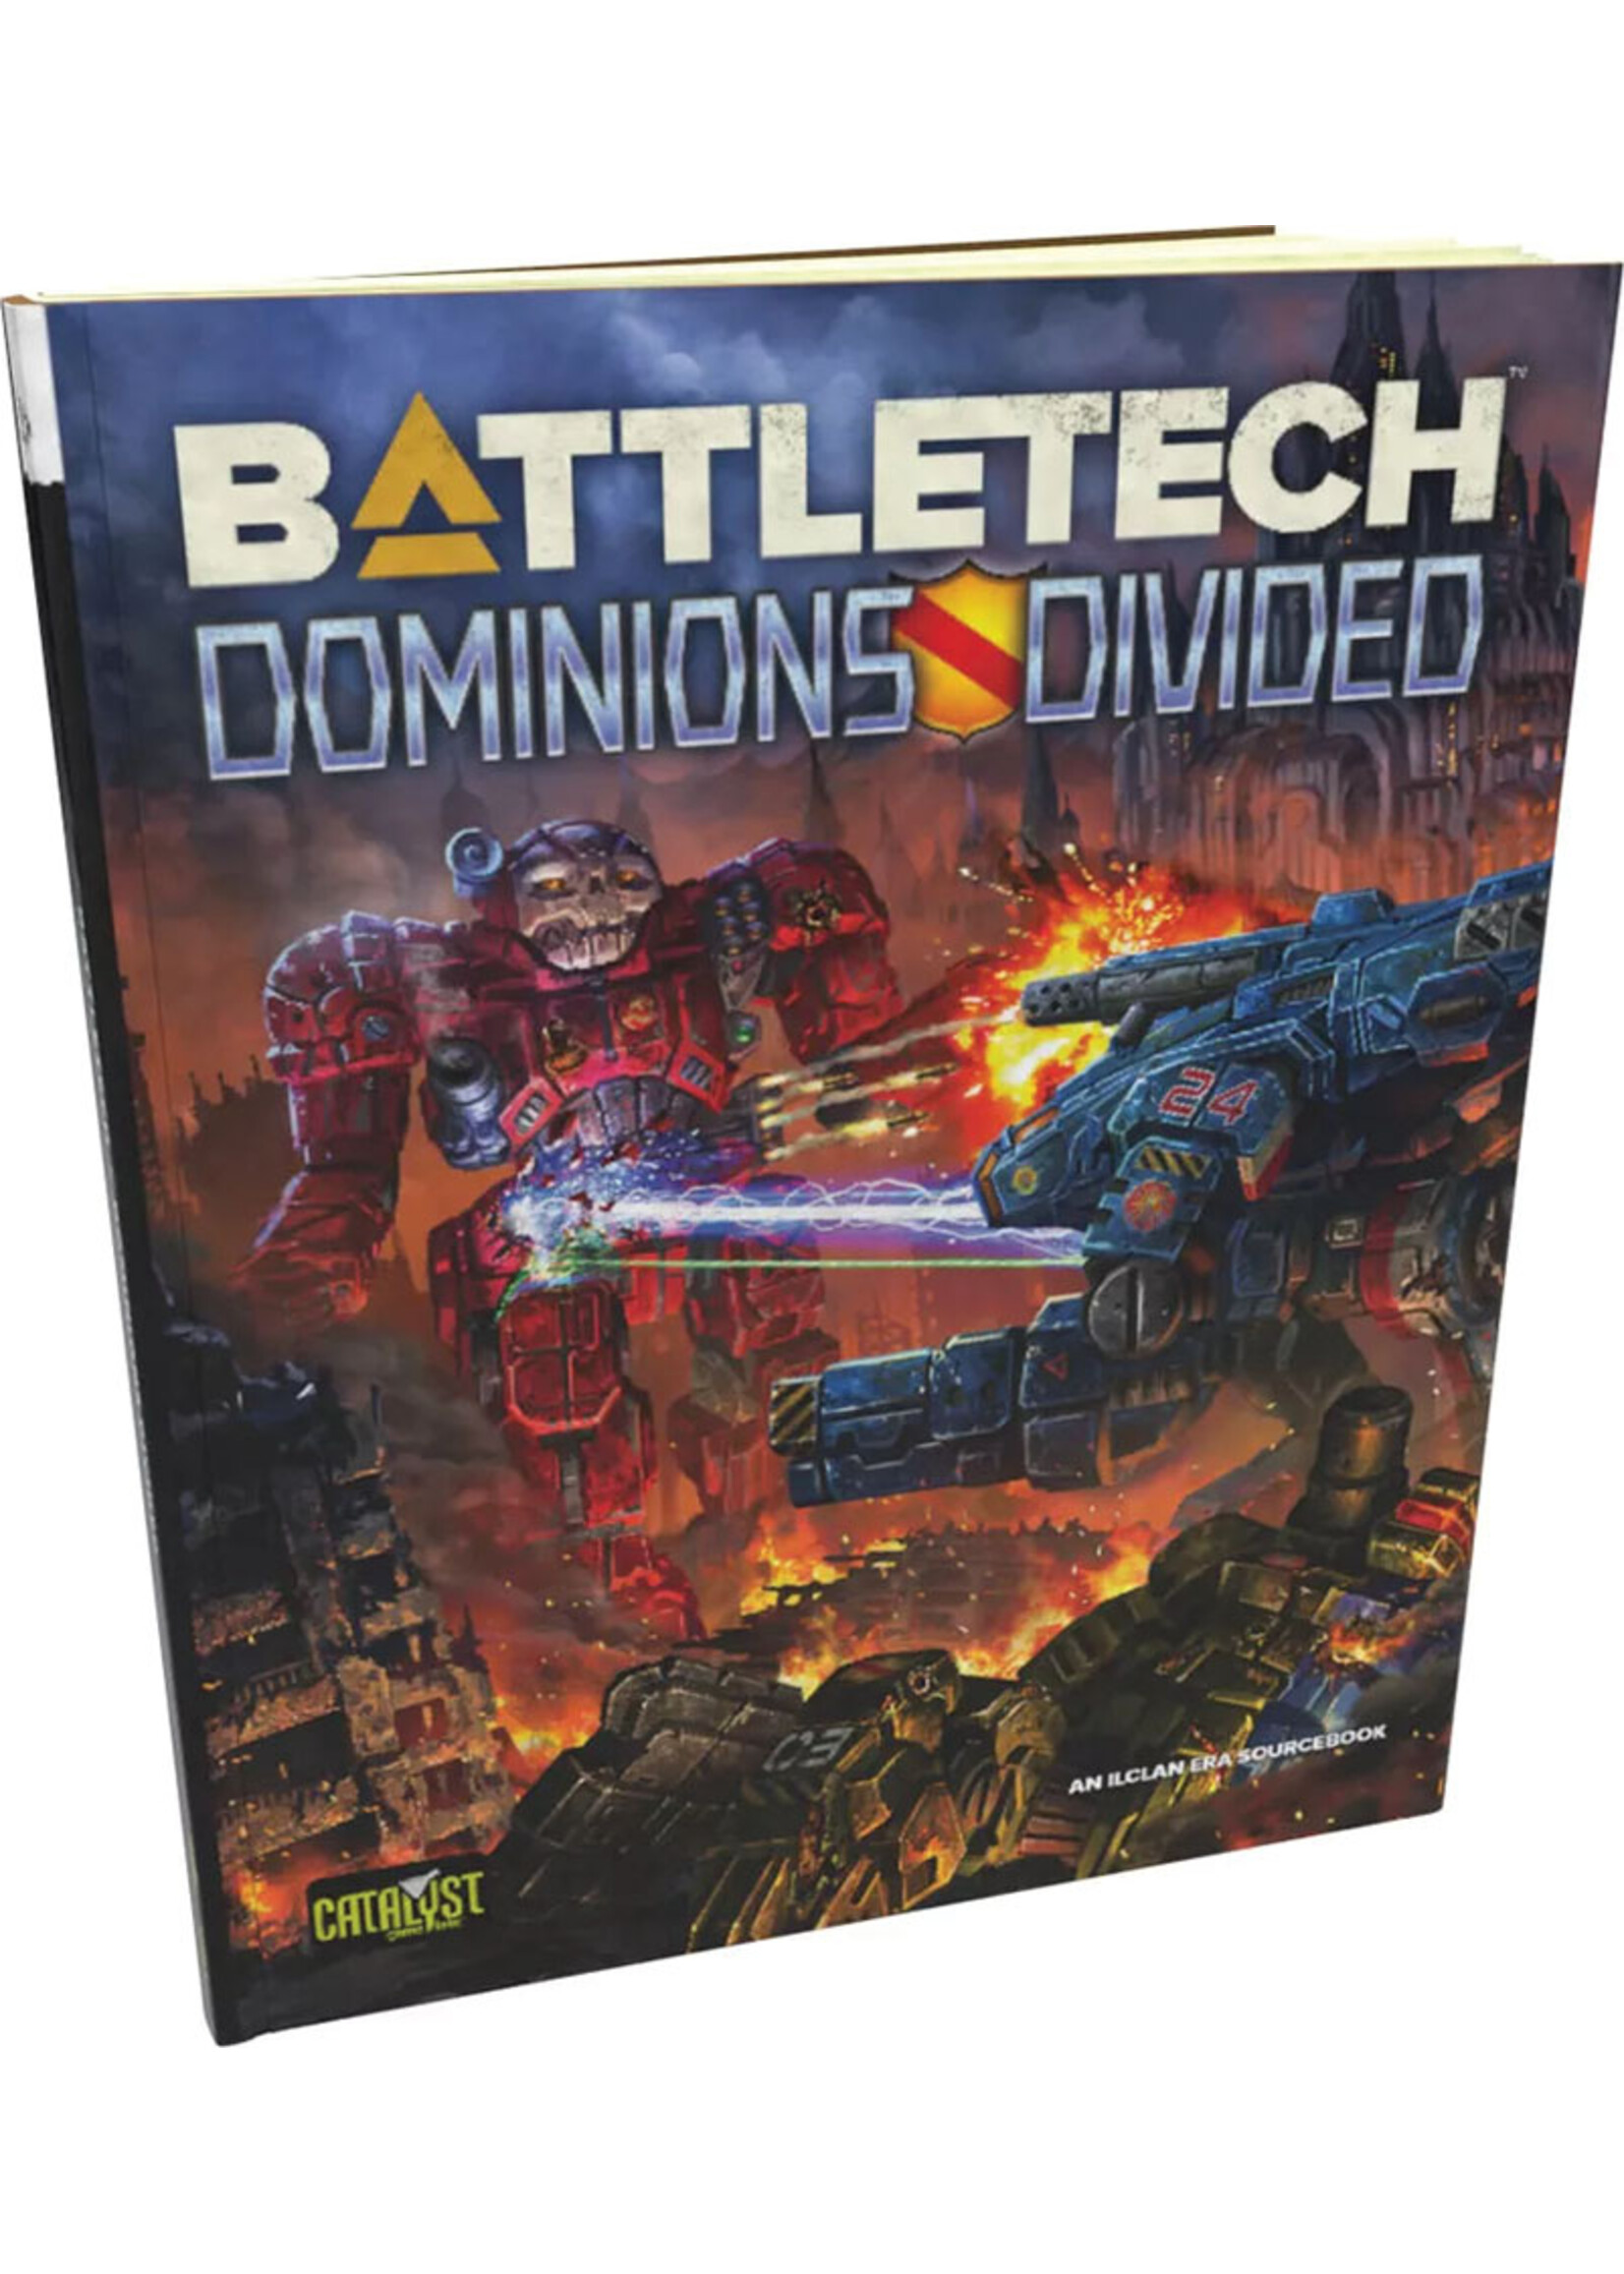 Battletech BattleTech: Dominions Divided